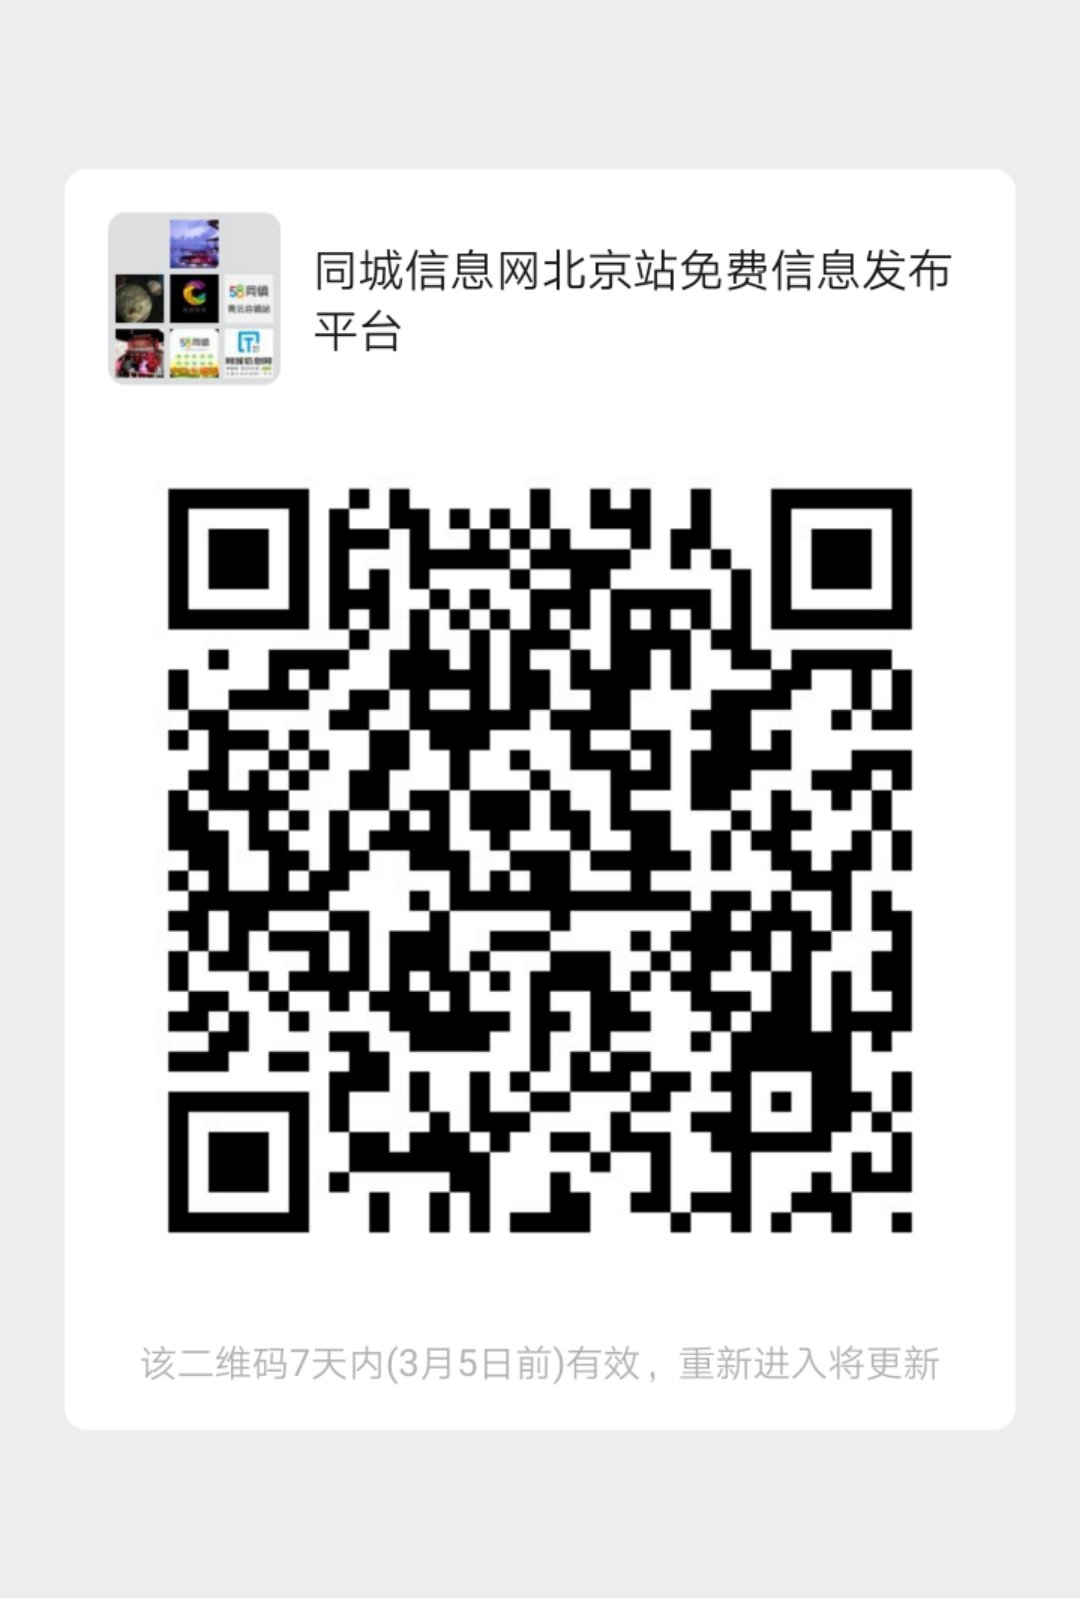 同城信息网北京站免费信息发布平台